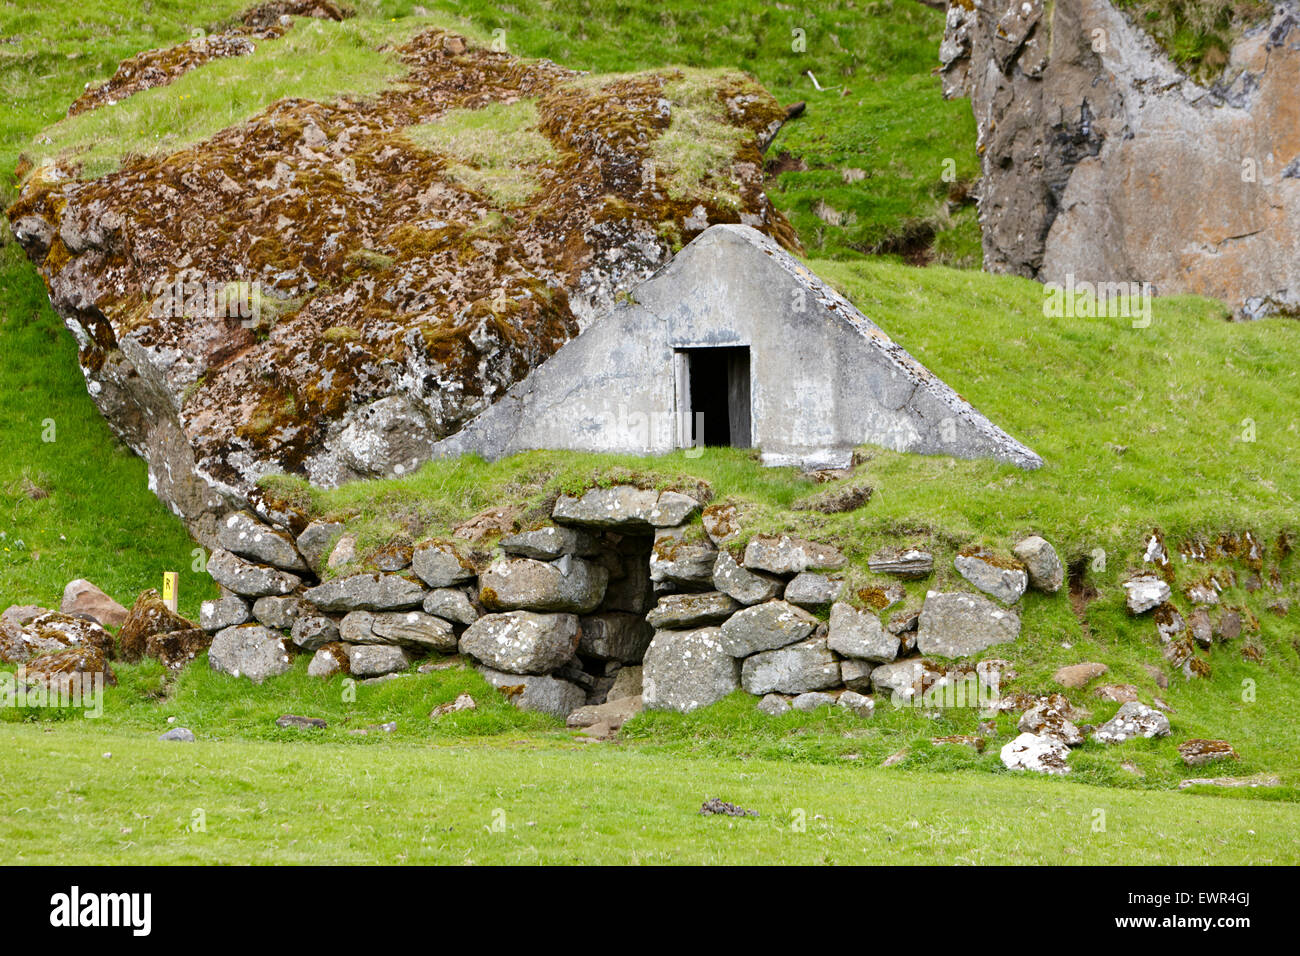 Gazon herbe vieille cabane couverte de moutons d'Islande Banque D'Images